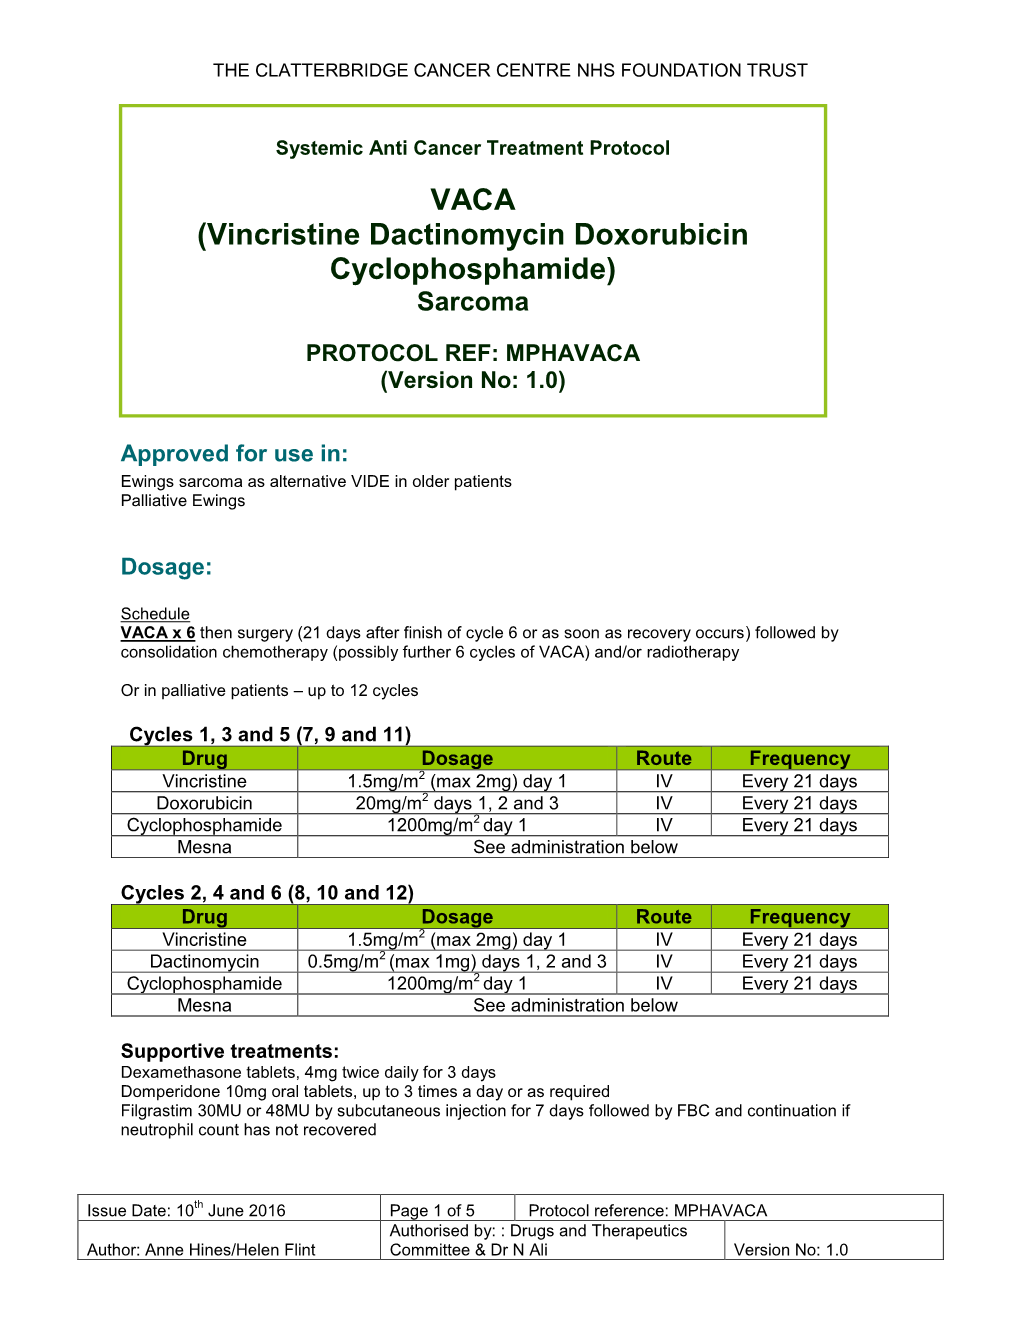 VACA (Vincristine Dactinomycin Doxorubicin Cyclophosphamide)